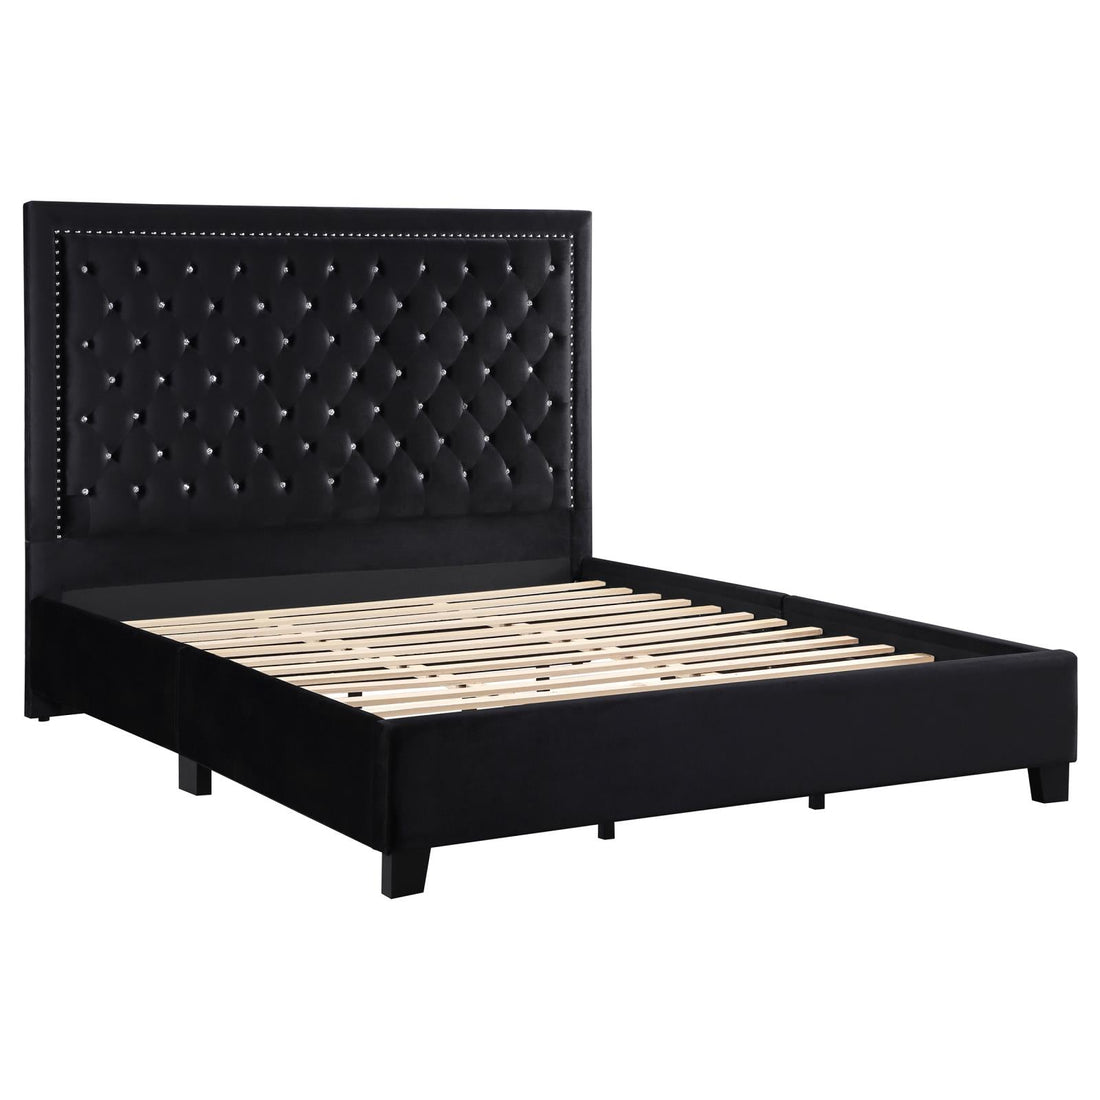 Hailey Upholstered Tufted Platform California King Bed Black - 315925KW - Bien Home Furniture &amp; Electronics